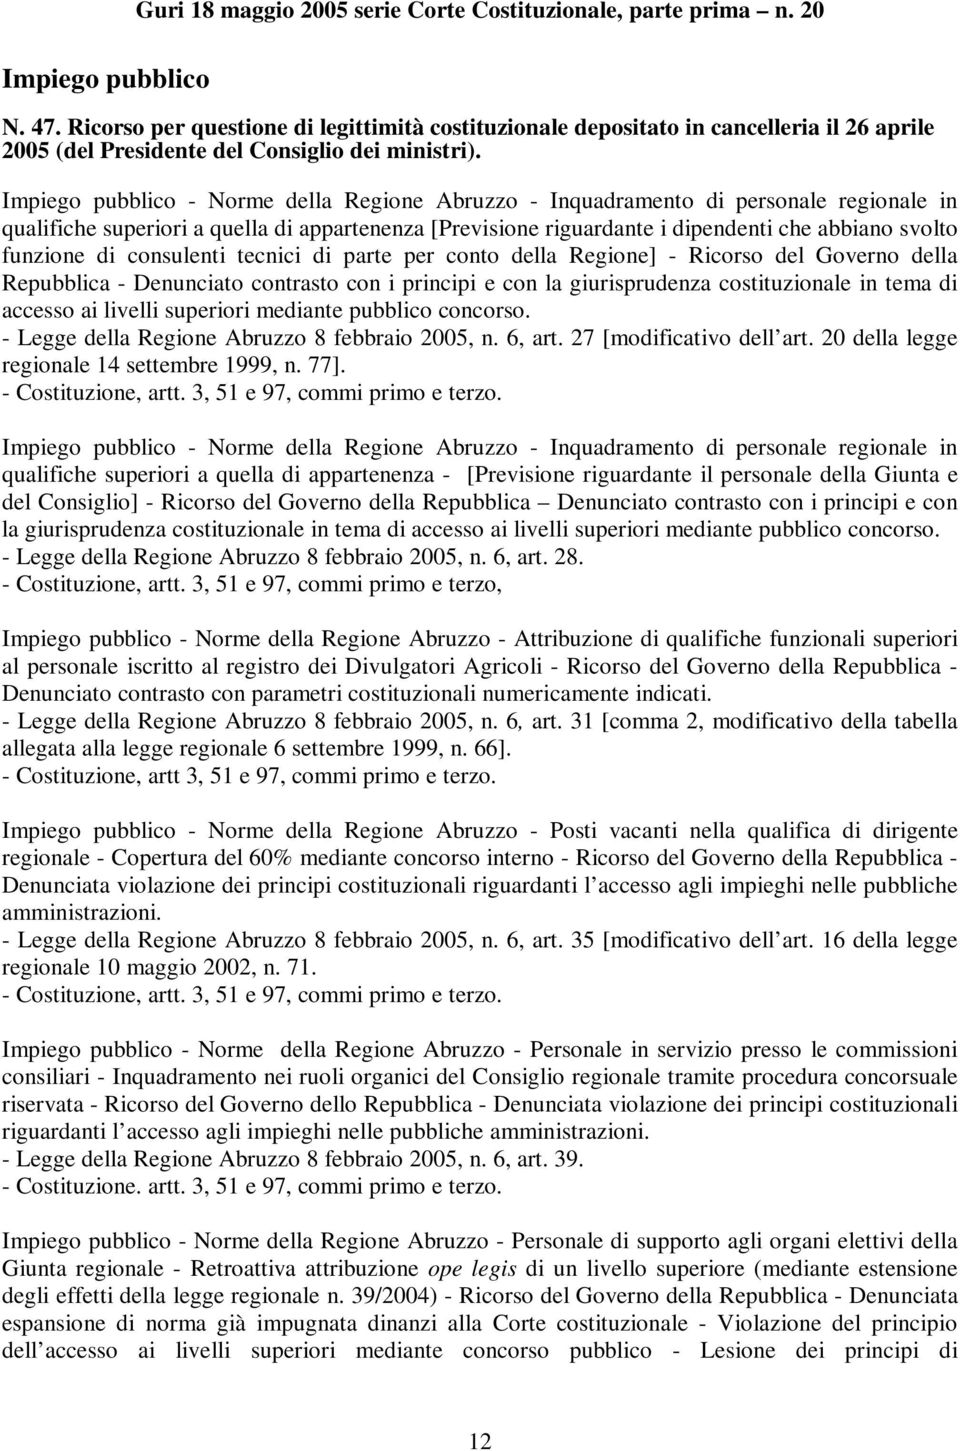 Impiego pubblico - Norme della Regione Abruzzo - Inquadramento di personale regionale in qualifiche superiori a quella di appartenenza [Previsione riguardante i dipendenti che abbiano svolto funzione